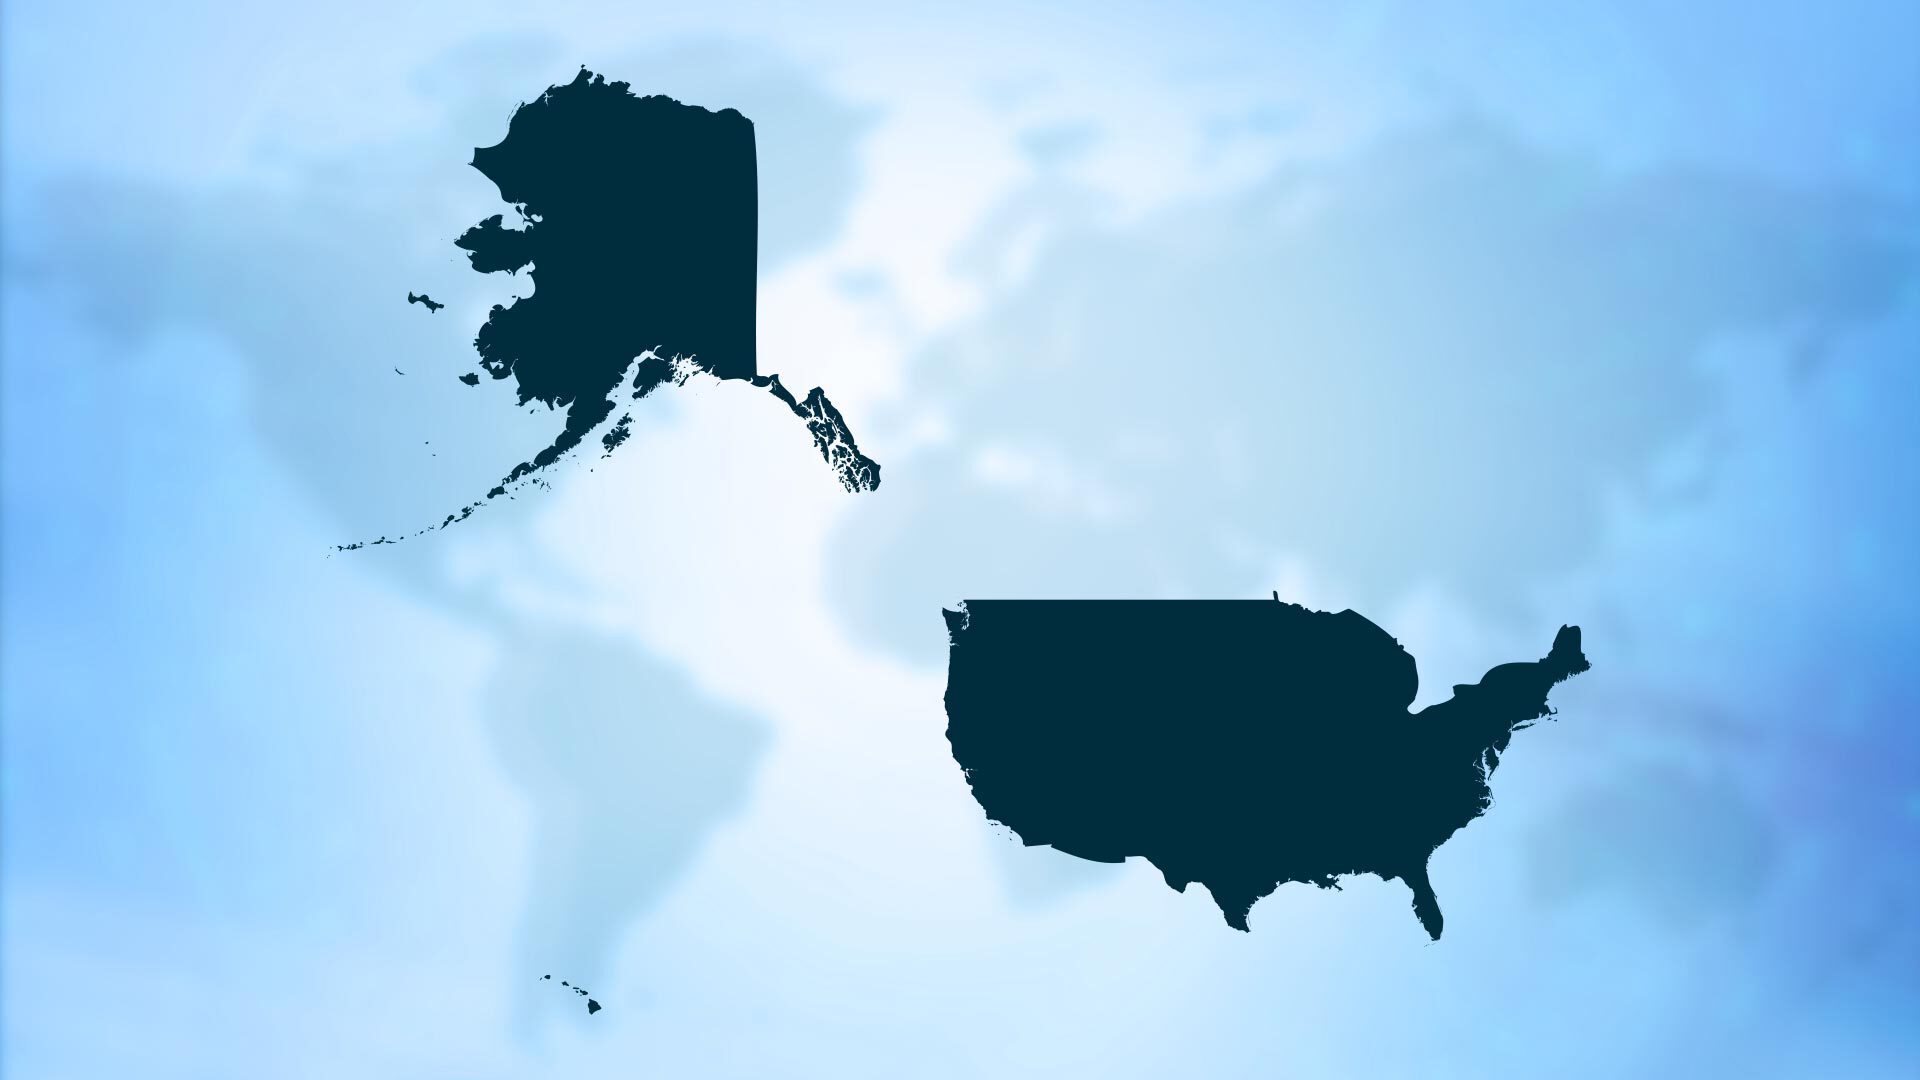 Stylized map of USA